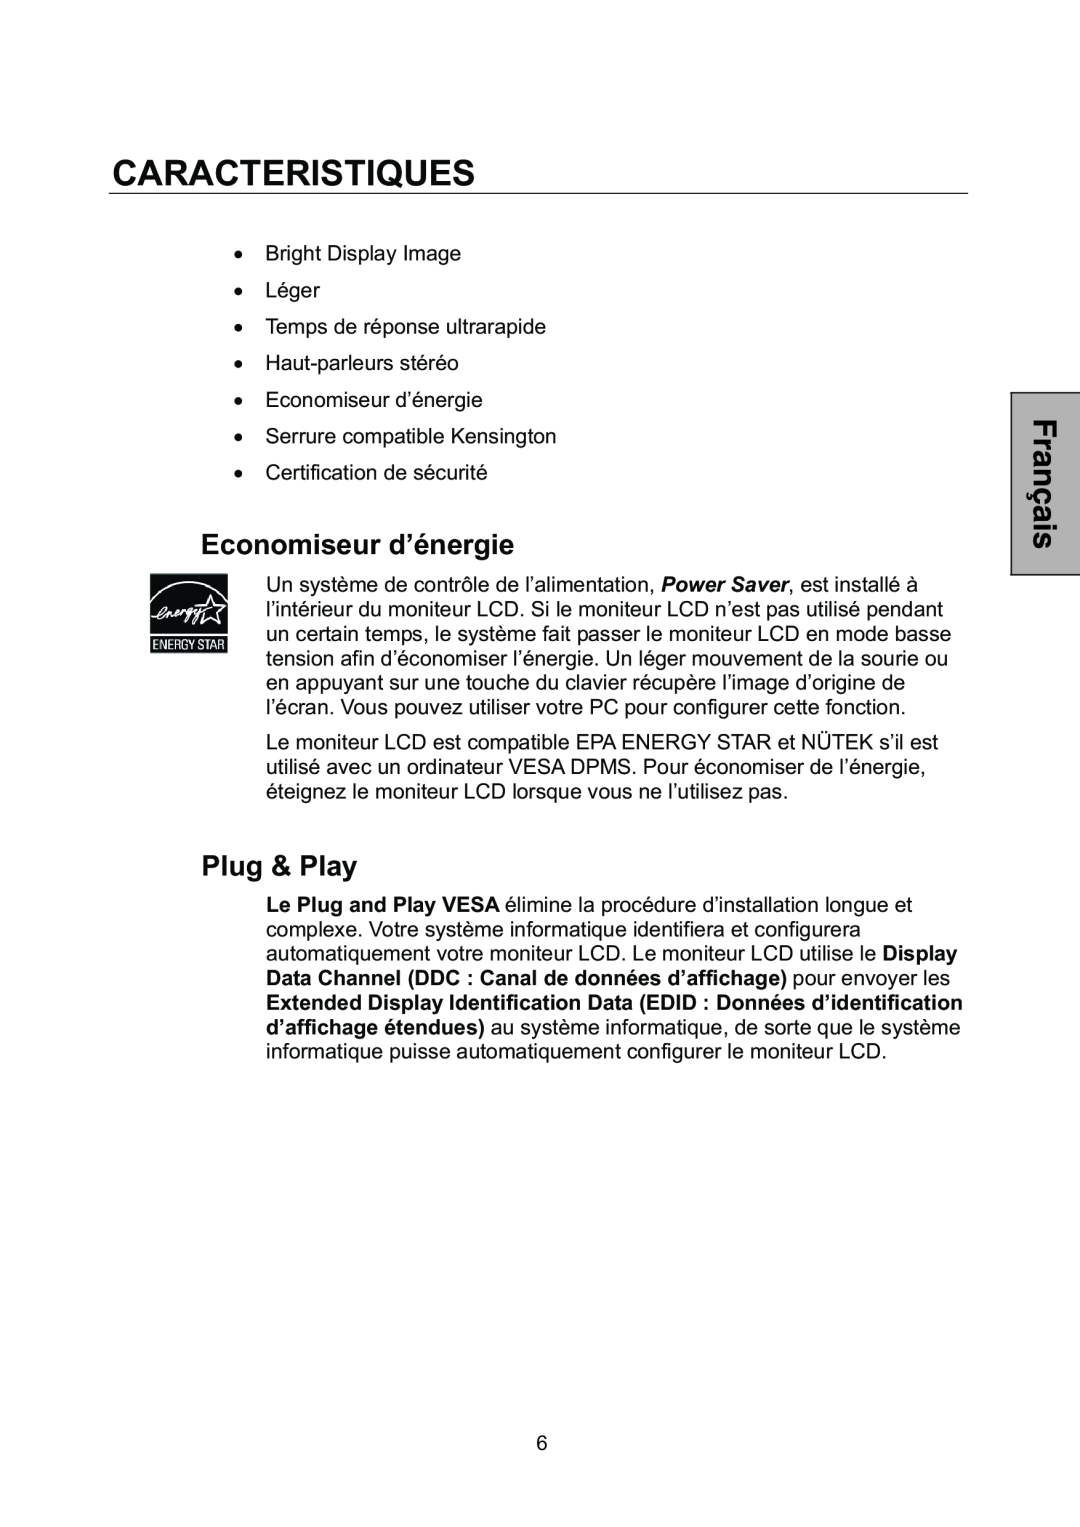 Westinghouse L1928NV manual Caracteristiques, Economiseur d’énergie, Plug & Play 